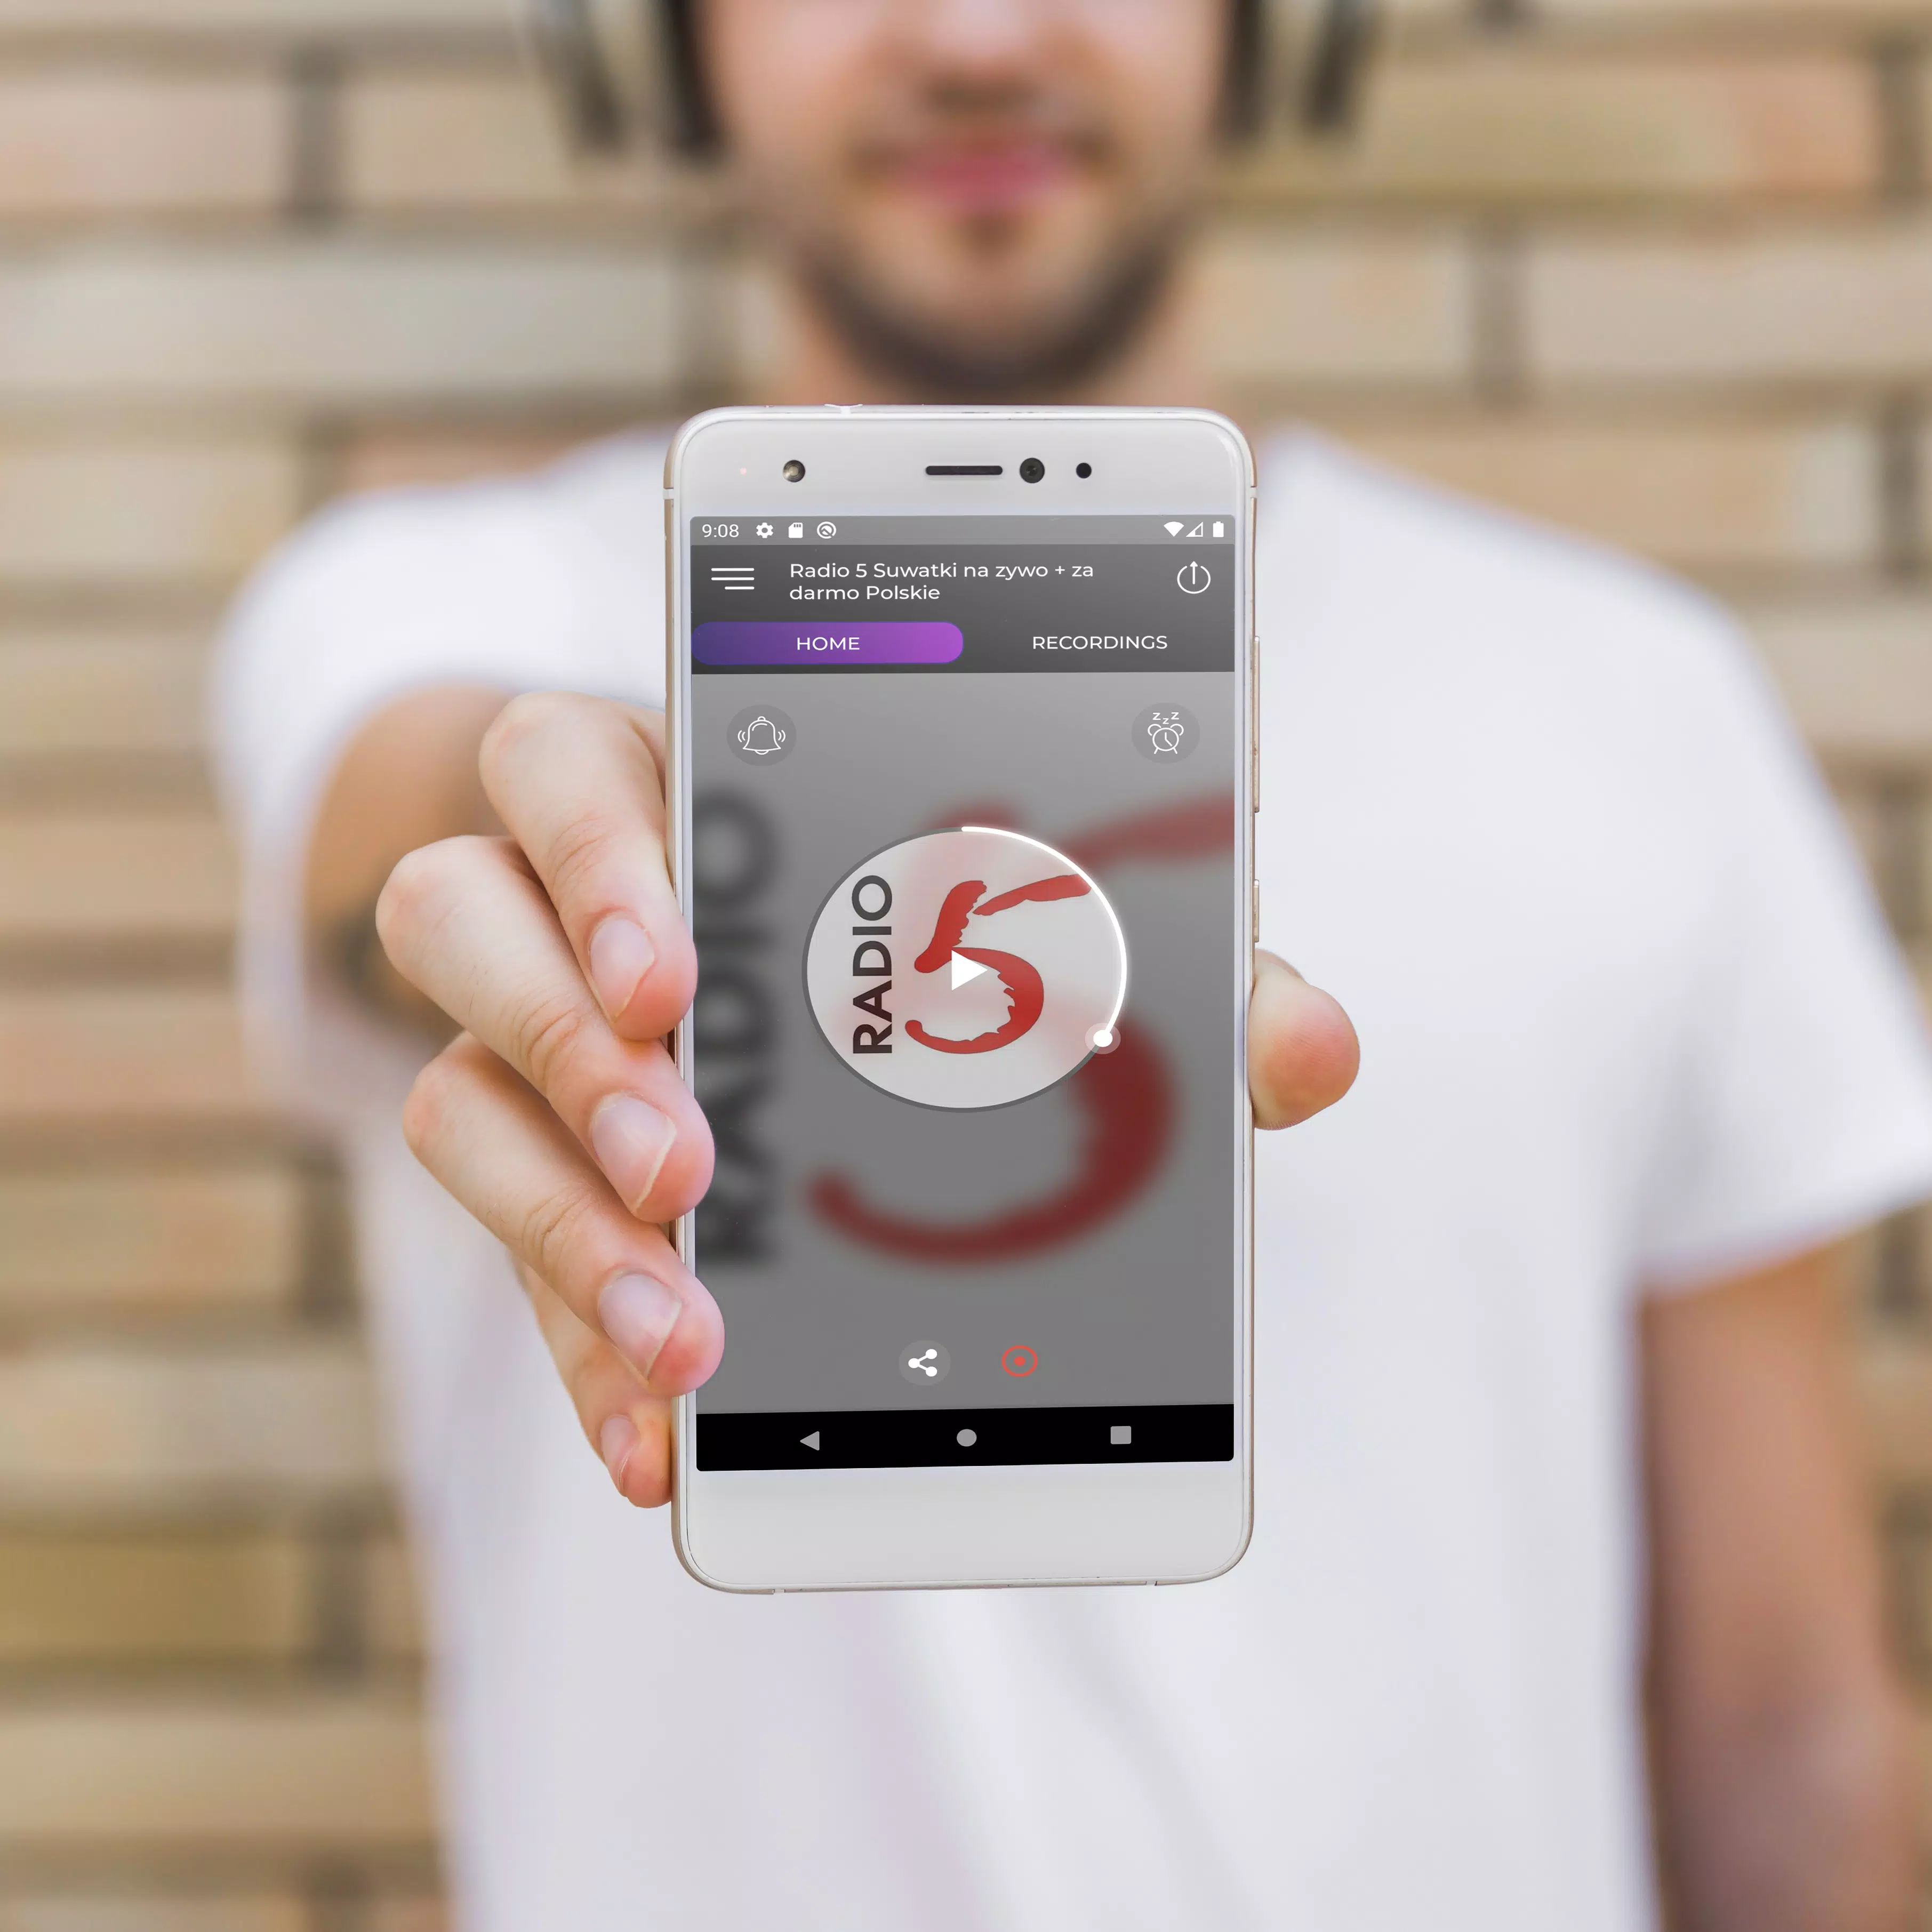 Radio 5 Suwałki Polskie FM App APK for Android Download